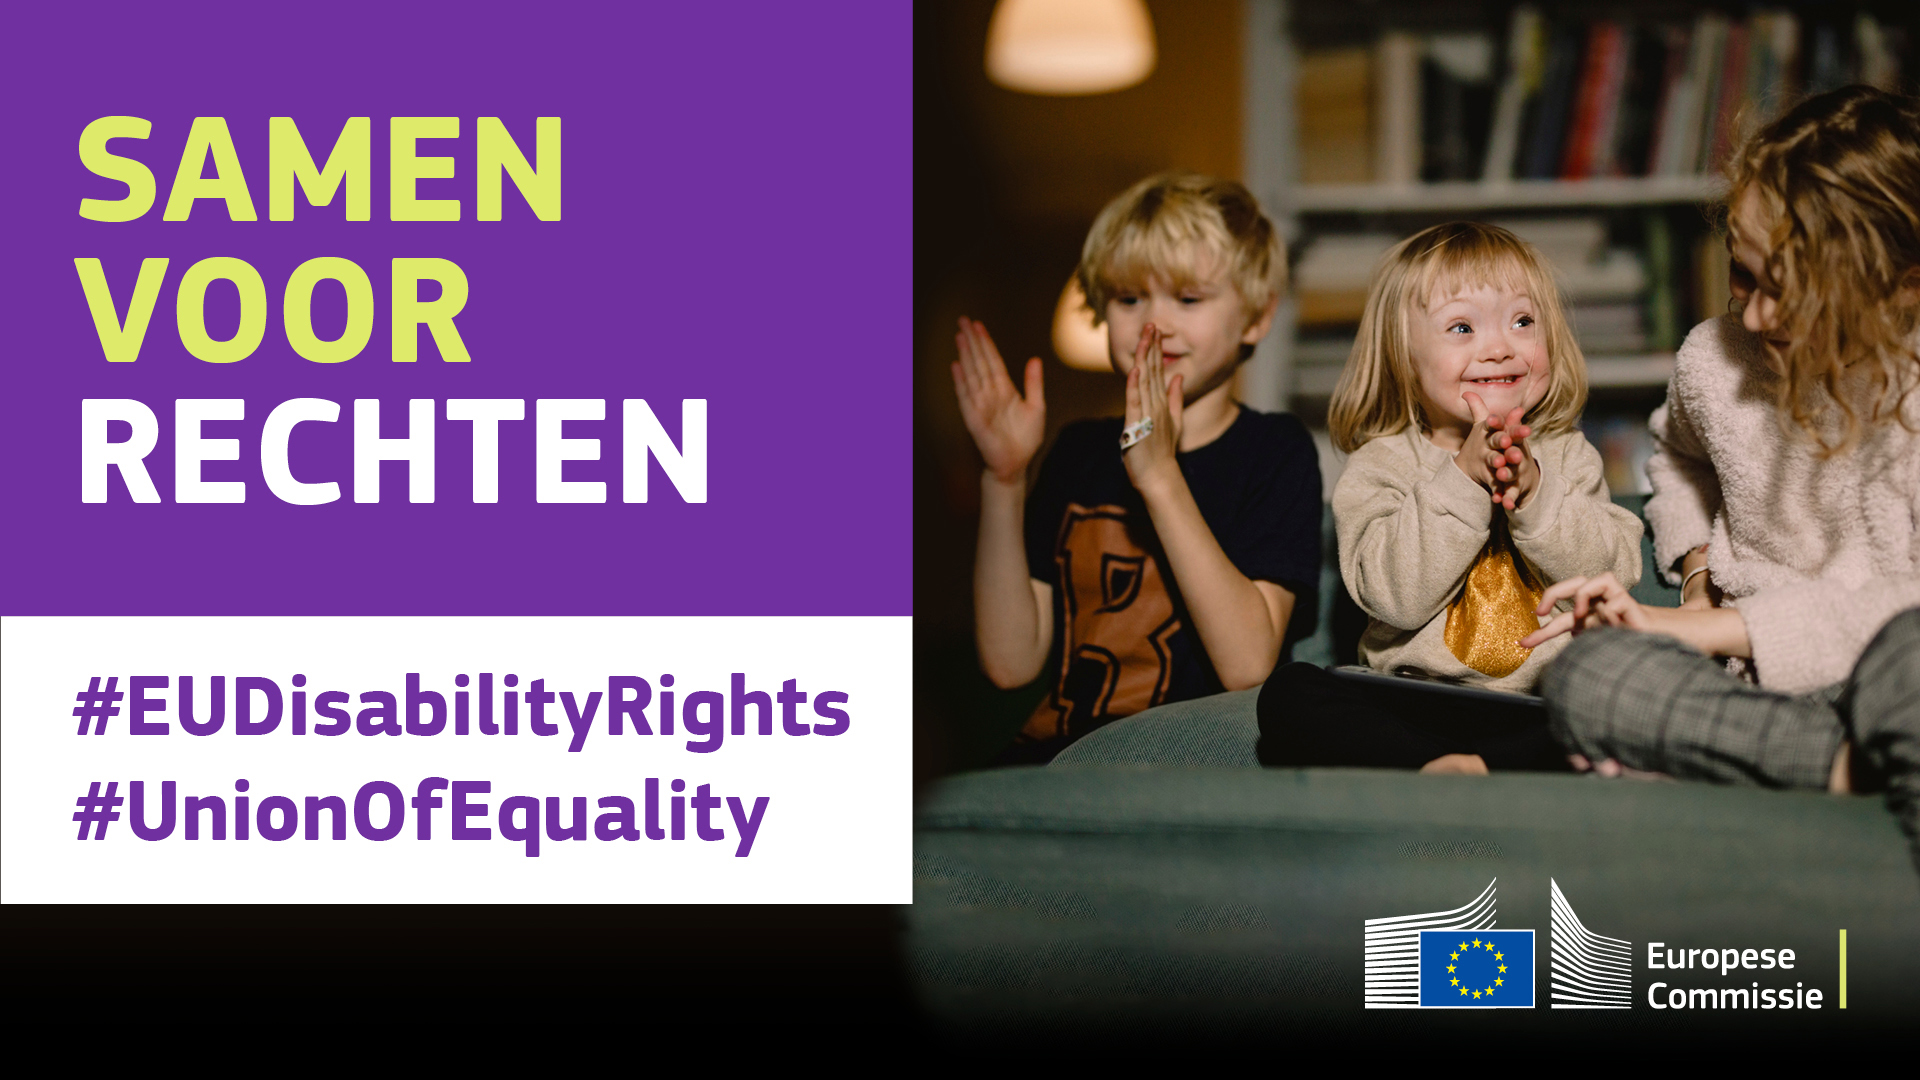 Drie kinderen die blij samen aan het spelen zijn. Eén kind heeft syndroom van Down. Tekst: Samen voor rechten, #EUDisabilityRights, #UnionOfEquality.